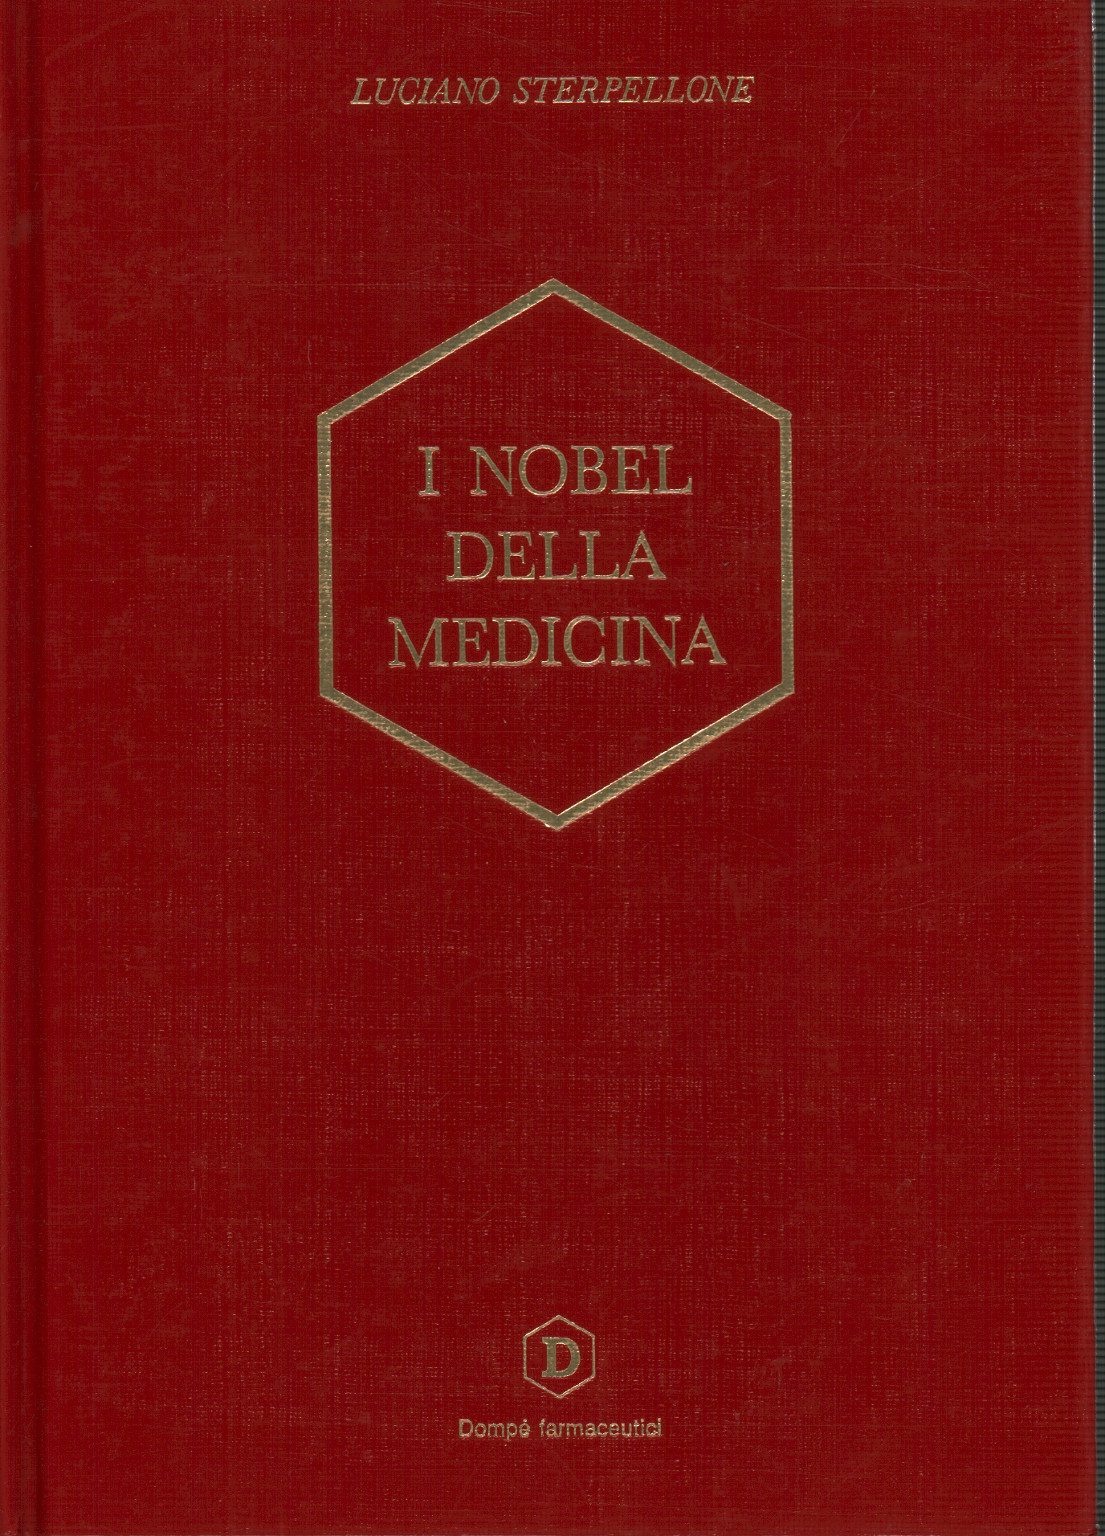 Die Nobelpreisträger der medizin (1901-1990), s.zu.